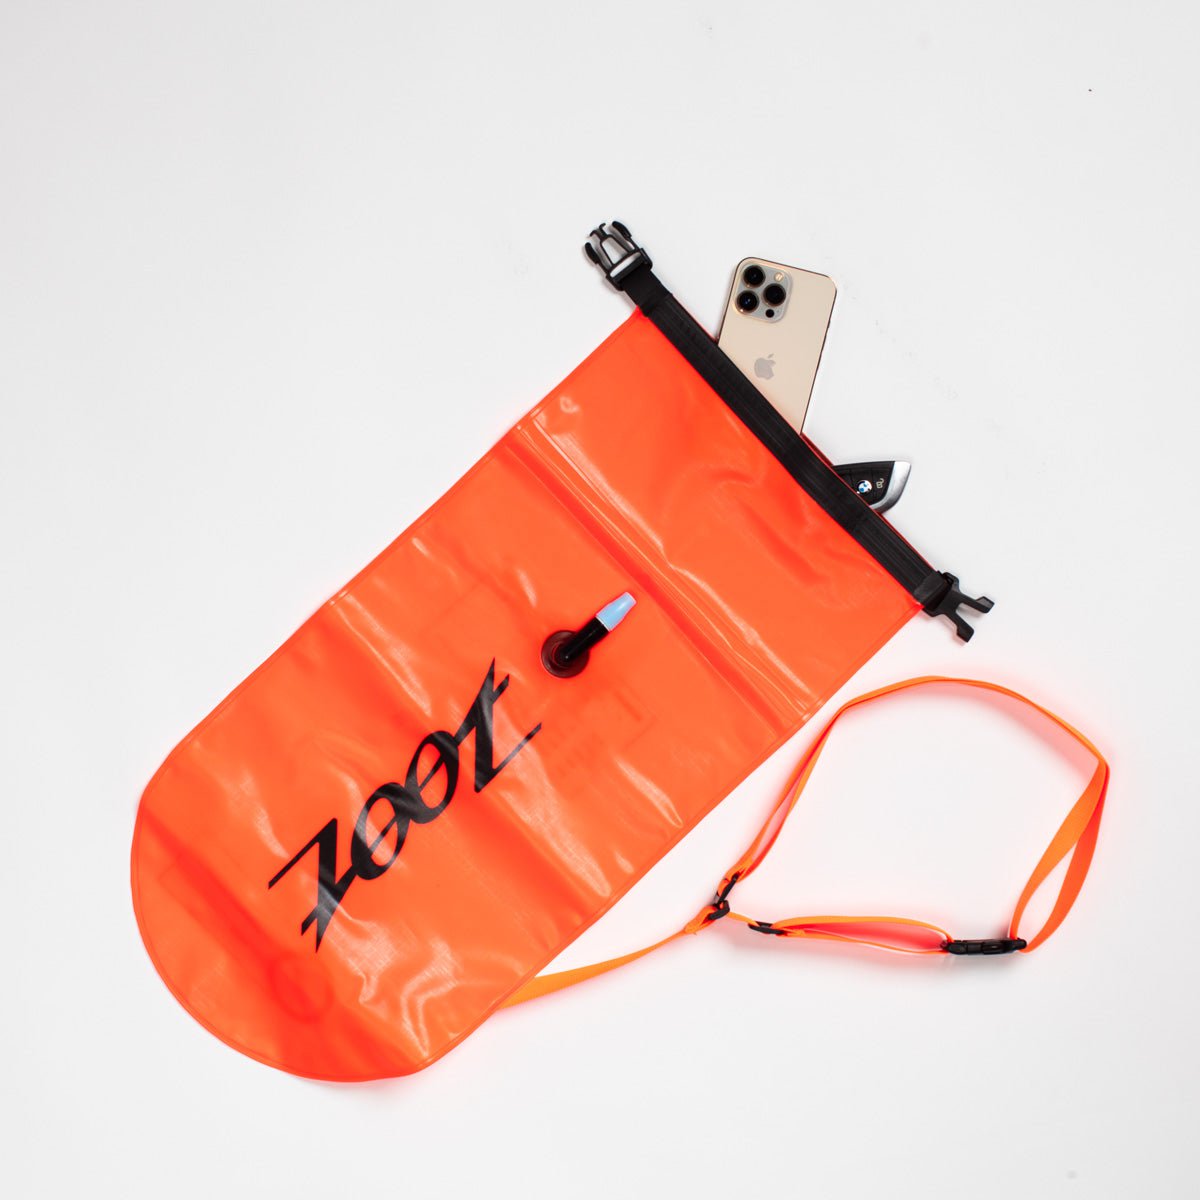 Zoot Sports SWIM ACCESSORIES Ultra Swim Safety Buoy & Dry Bag - Neon Orange